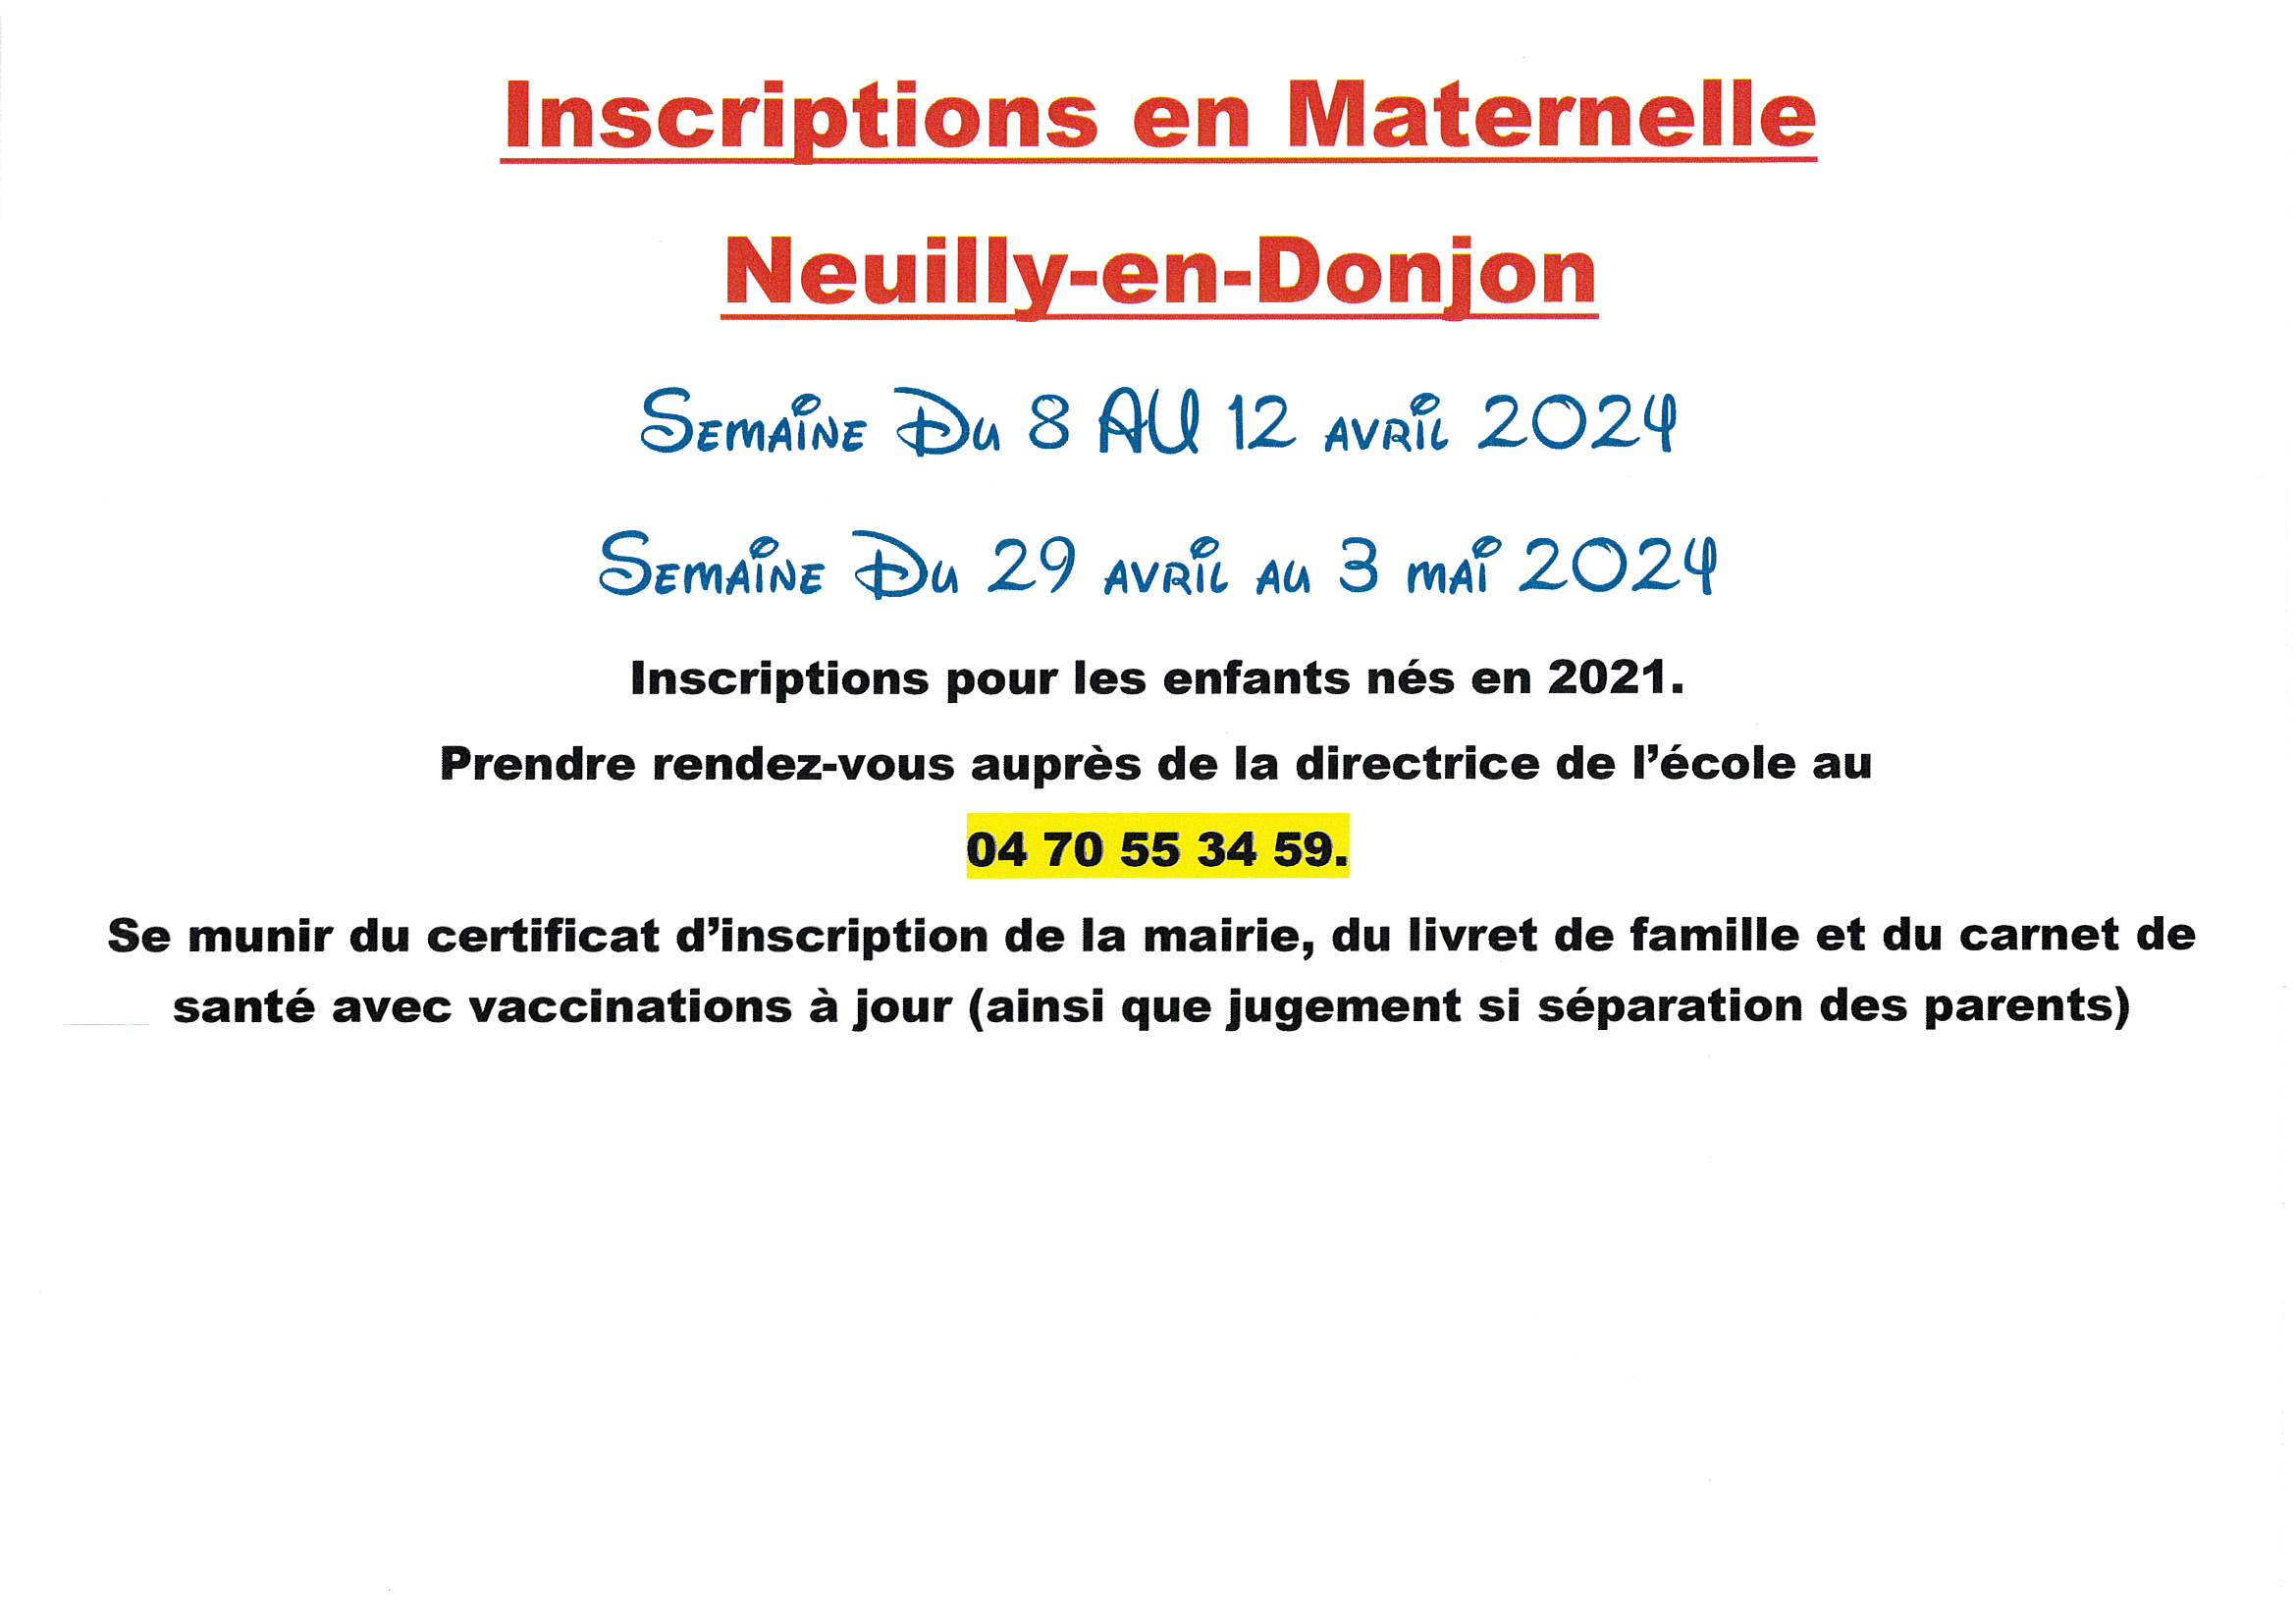 INSCRIPTION A L'ECOLE MARTERNELLE DE NEUILLY EN DONJON